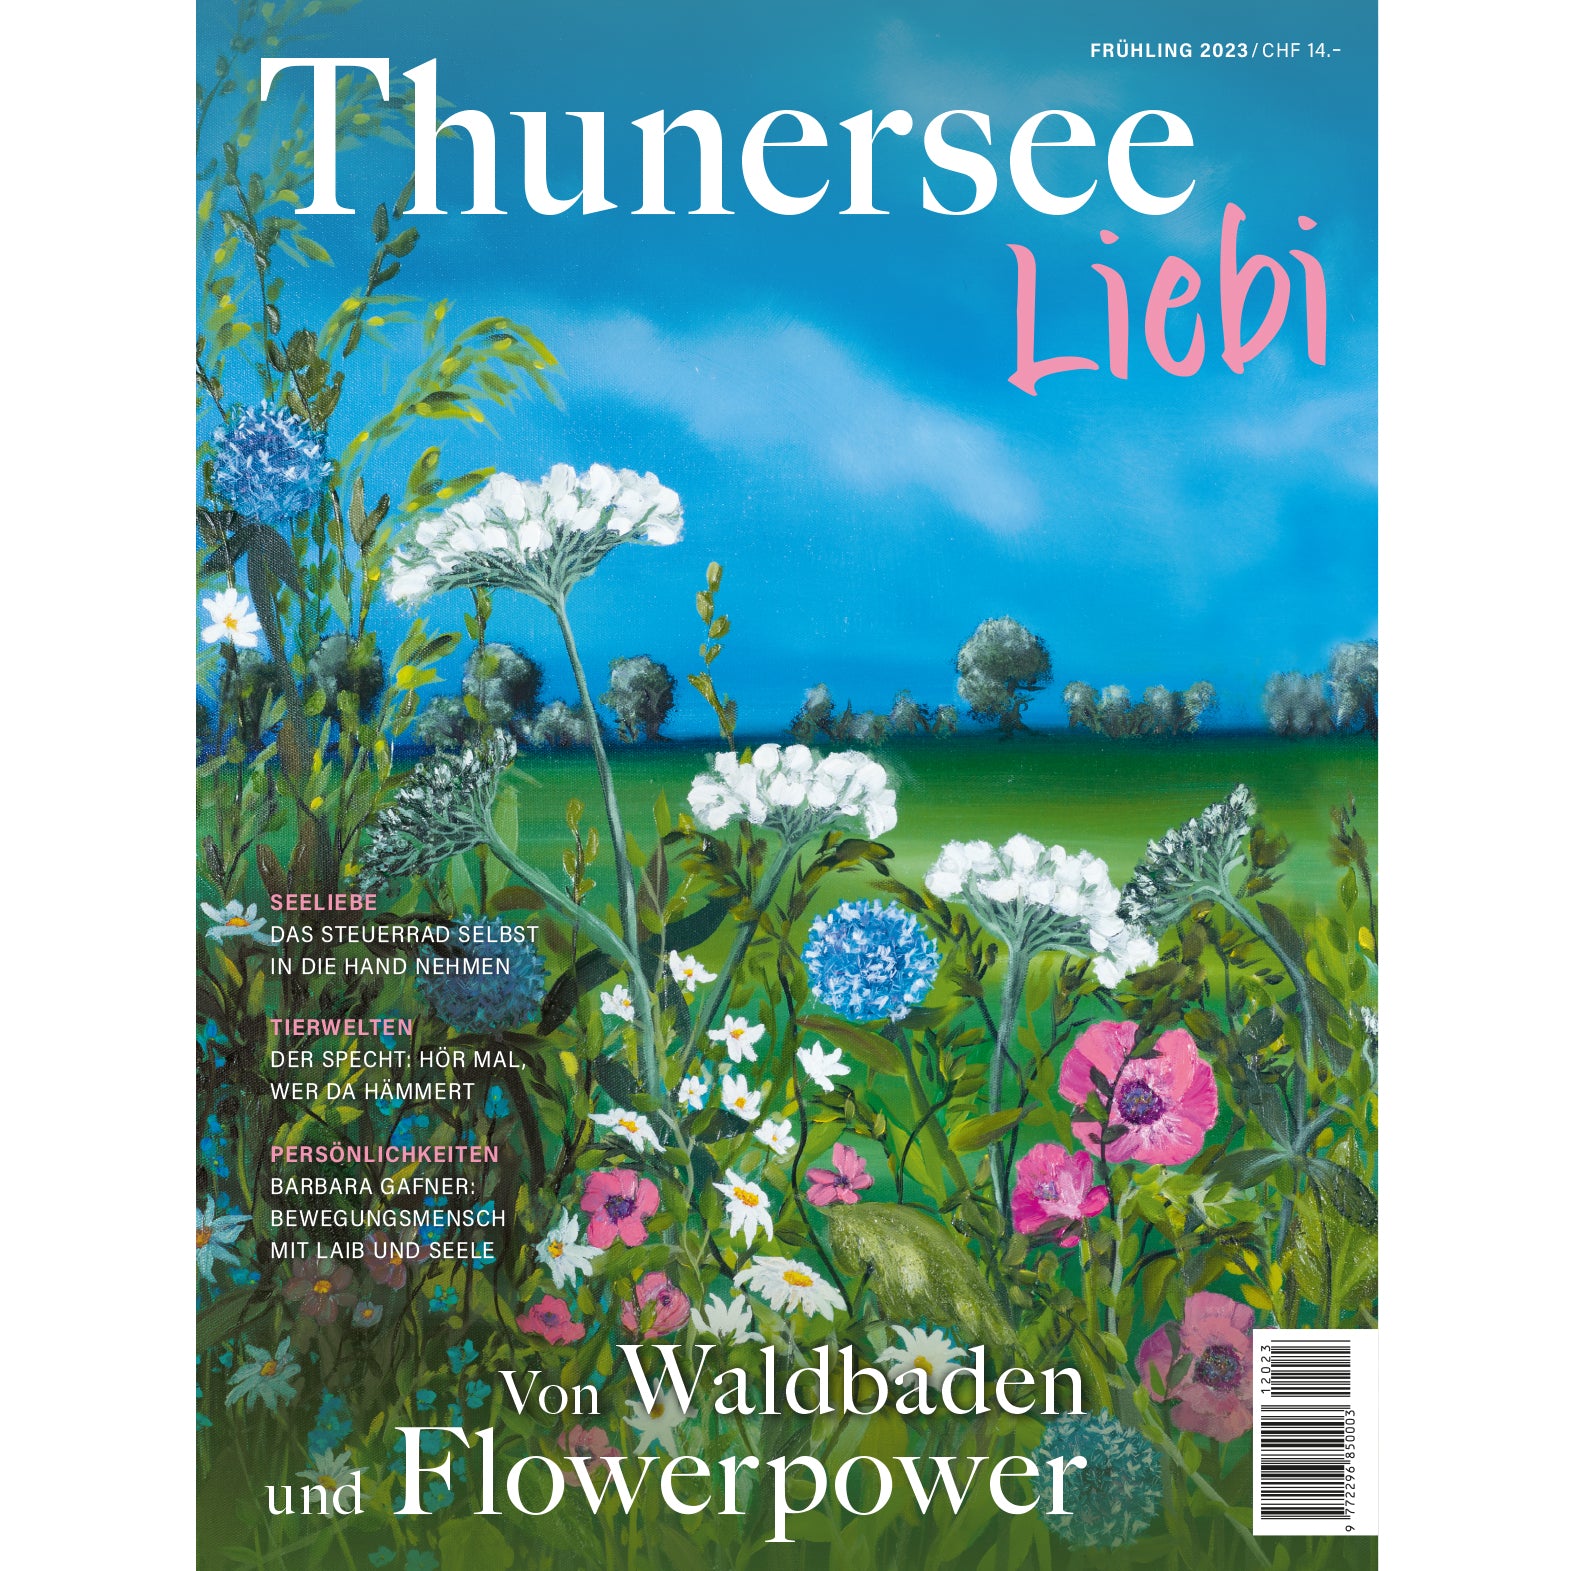 Thunersee Liebi 1/23 - A WEBER VERLAG